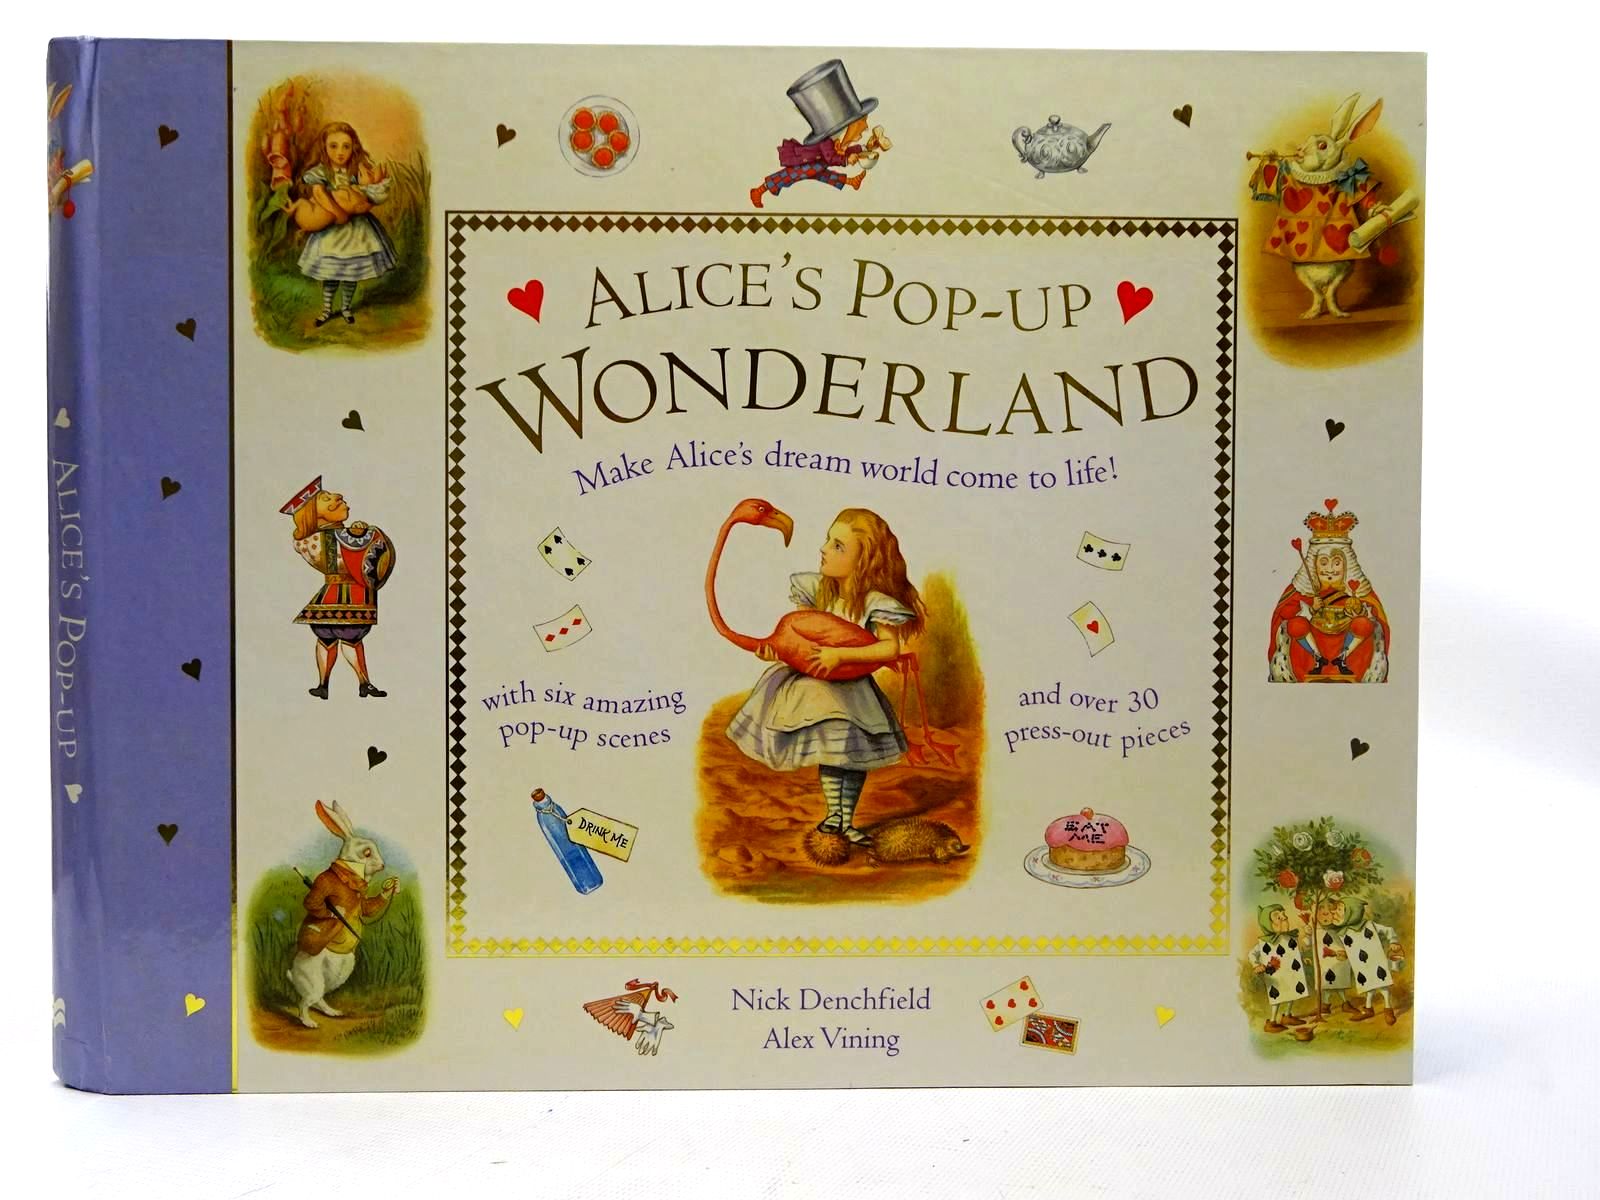 Stella & Rose's Books : ALICE'S POP-UP WONDERLAND Written By Lewis